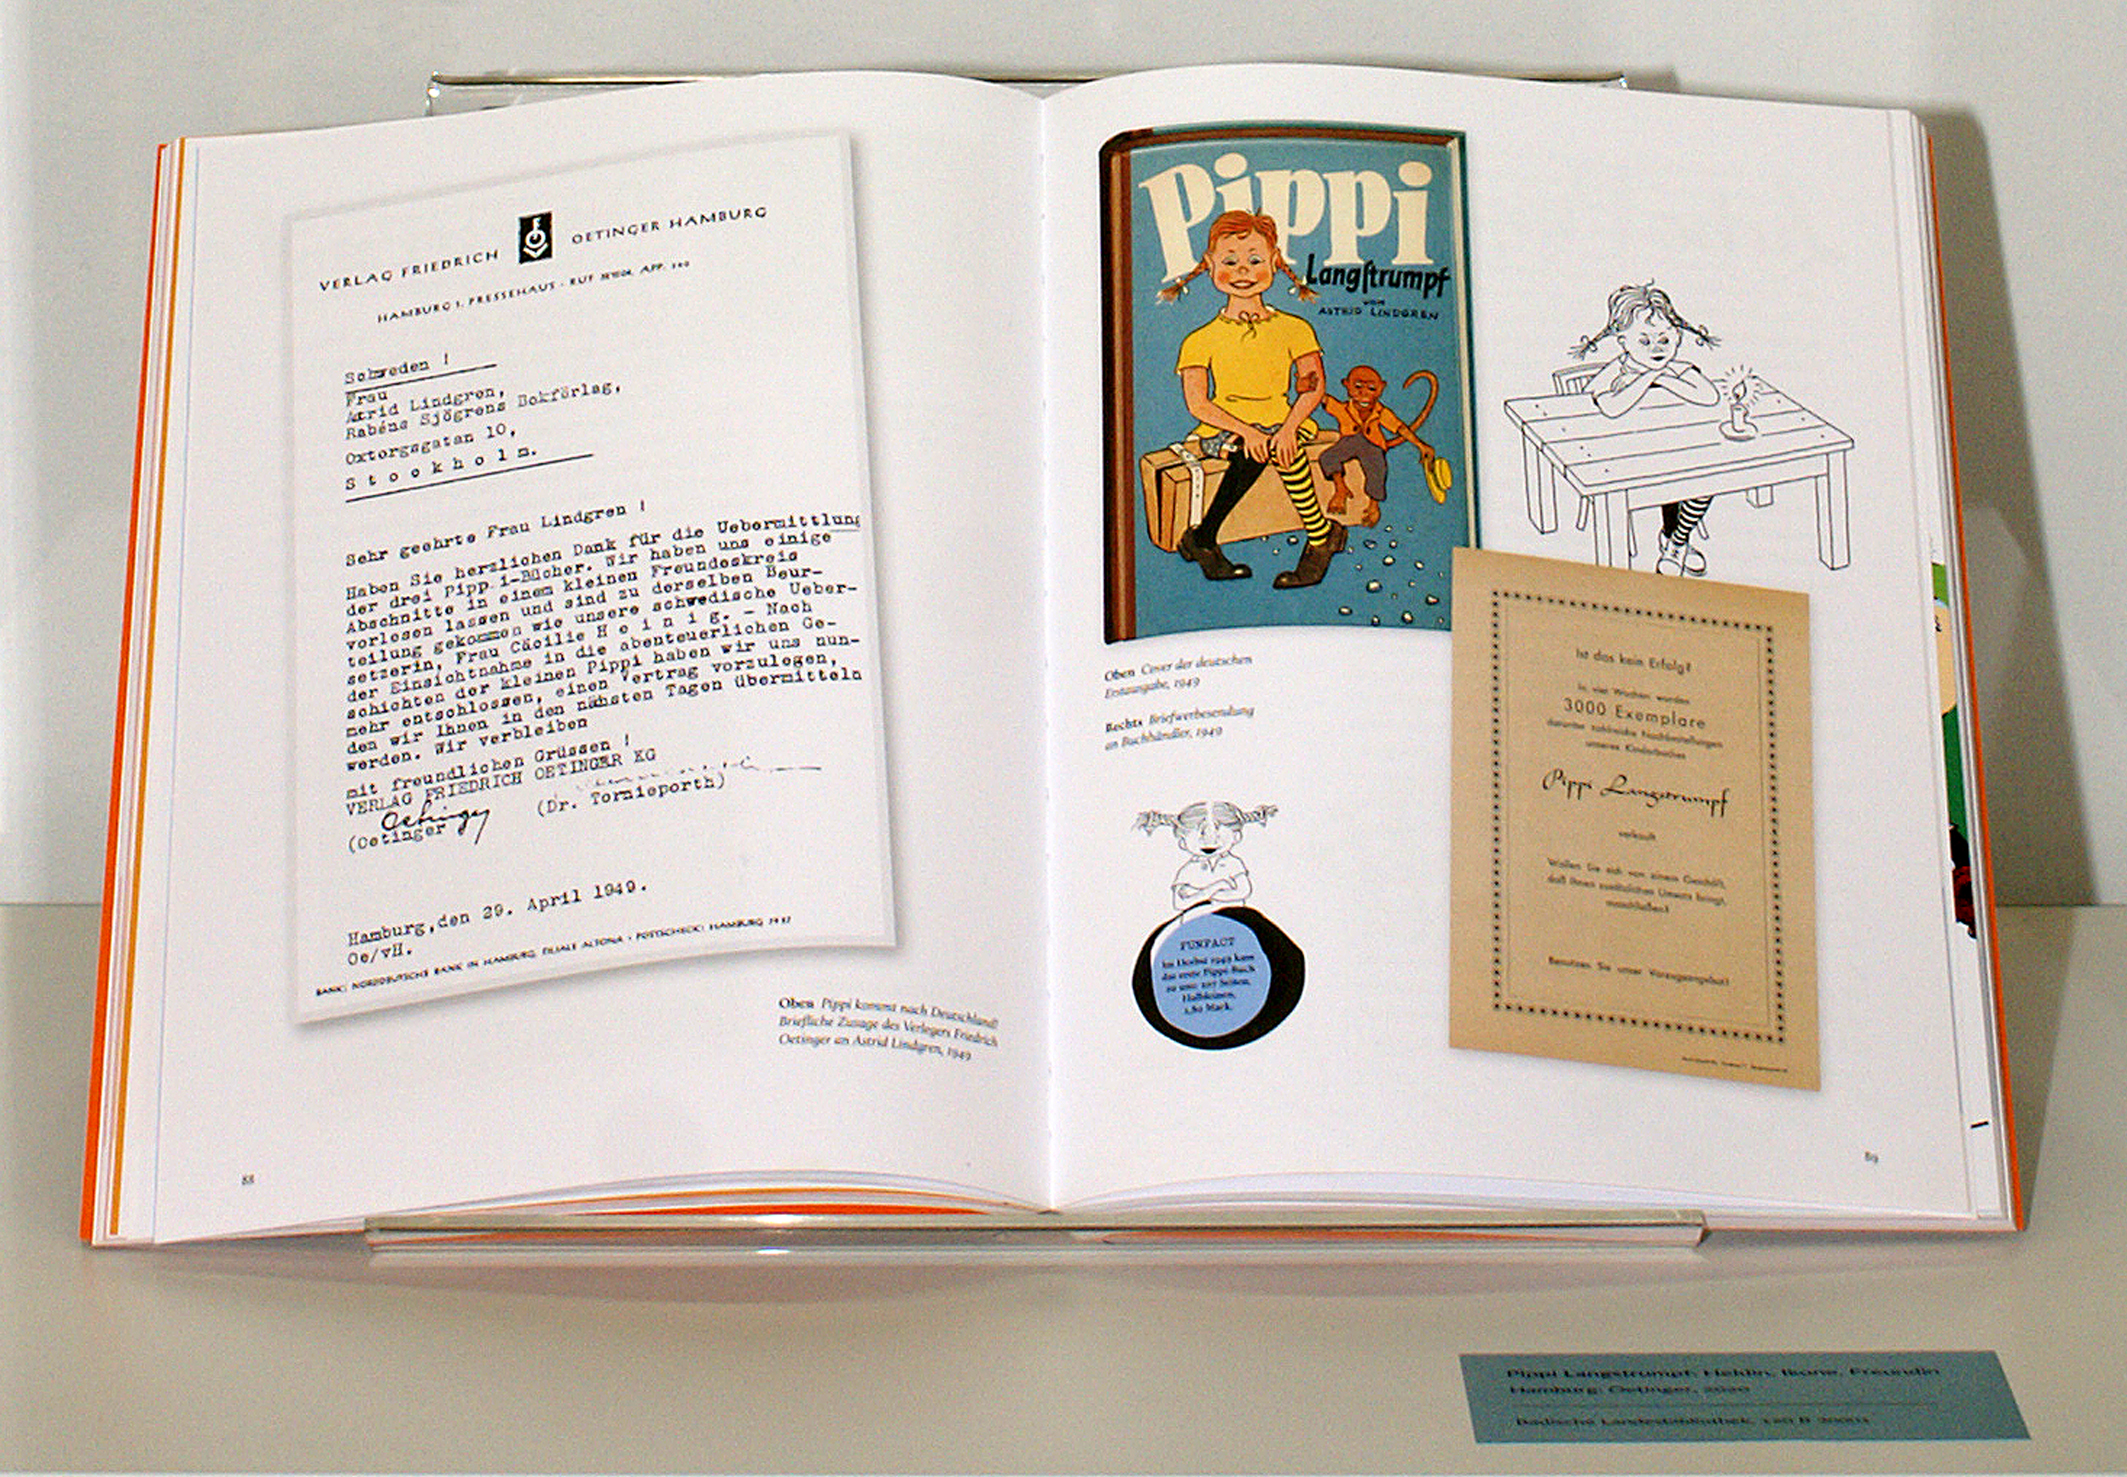 Doppelseite aus "Pippi Langstrumpf: Heldin, Ikone, Freundin" mit mehreren Illustrationen und Texten.